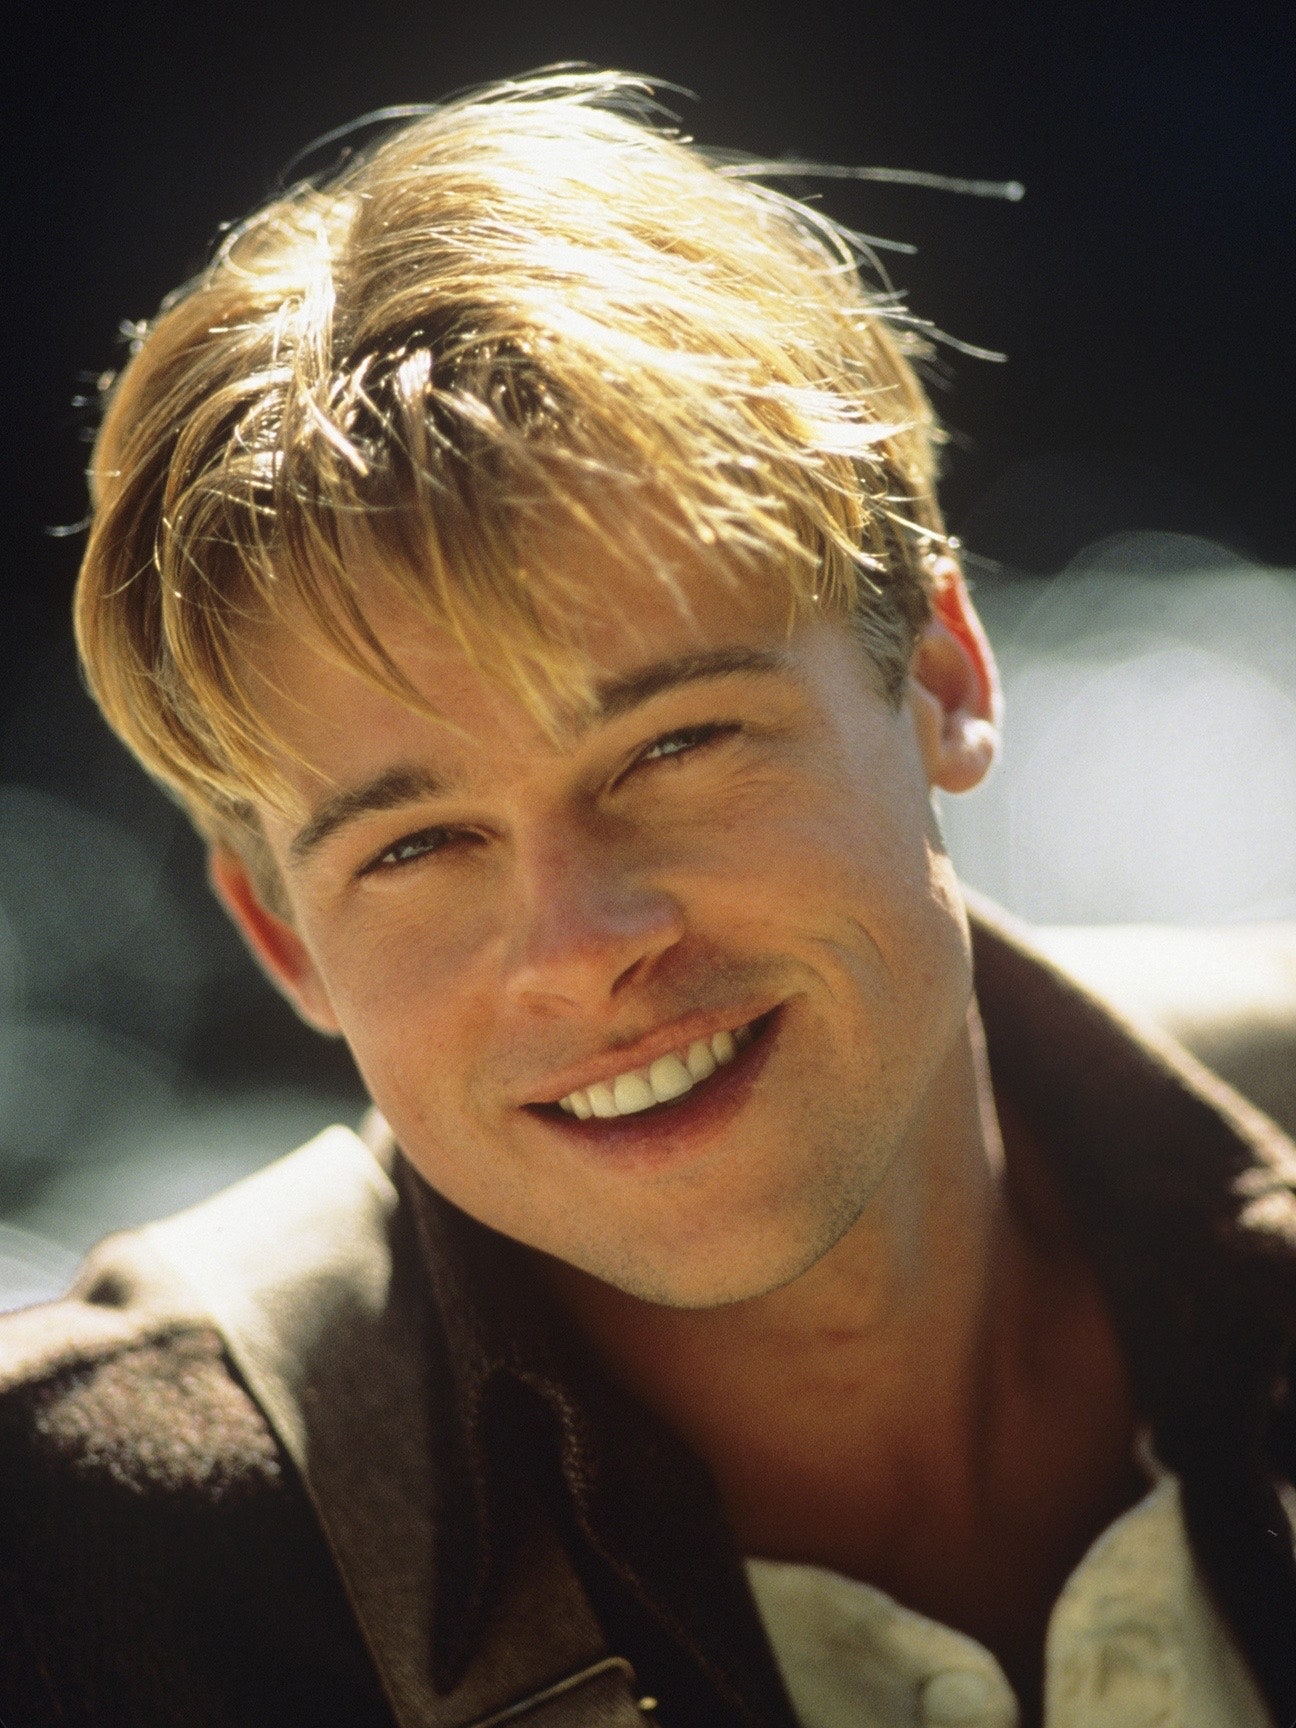 Dàn mỹ nam huyền thoại giờ ra sao: Tom Cruise, Brad Pitt U60 vẫn phong độ, Leonardo bị ngải heo nhập chưa bằng loạt nam thần hói dần đều - Ảnh 15.